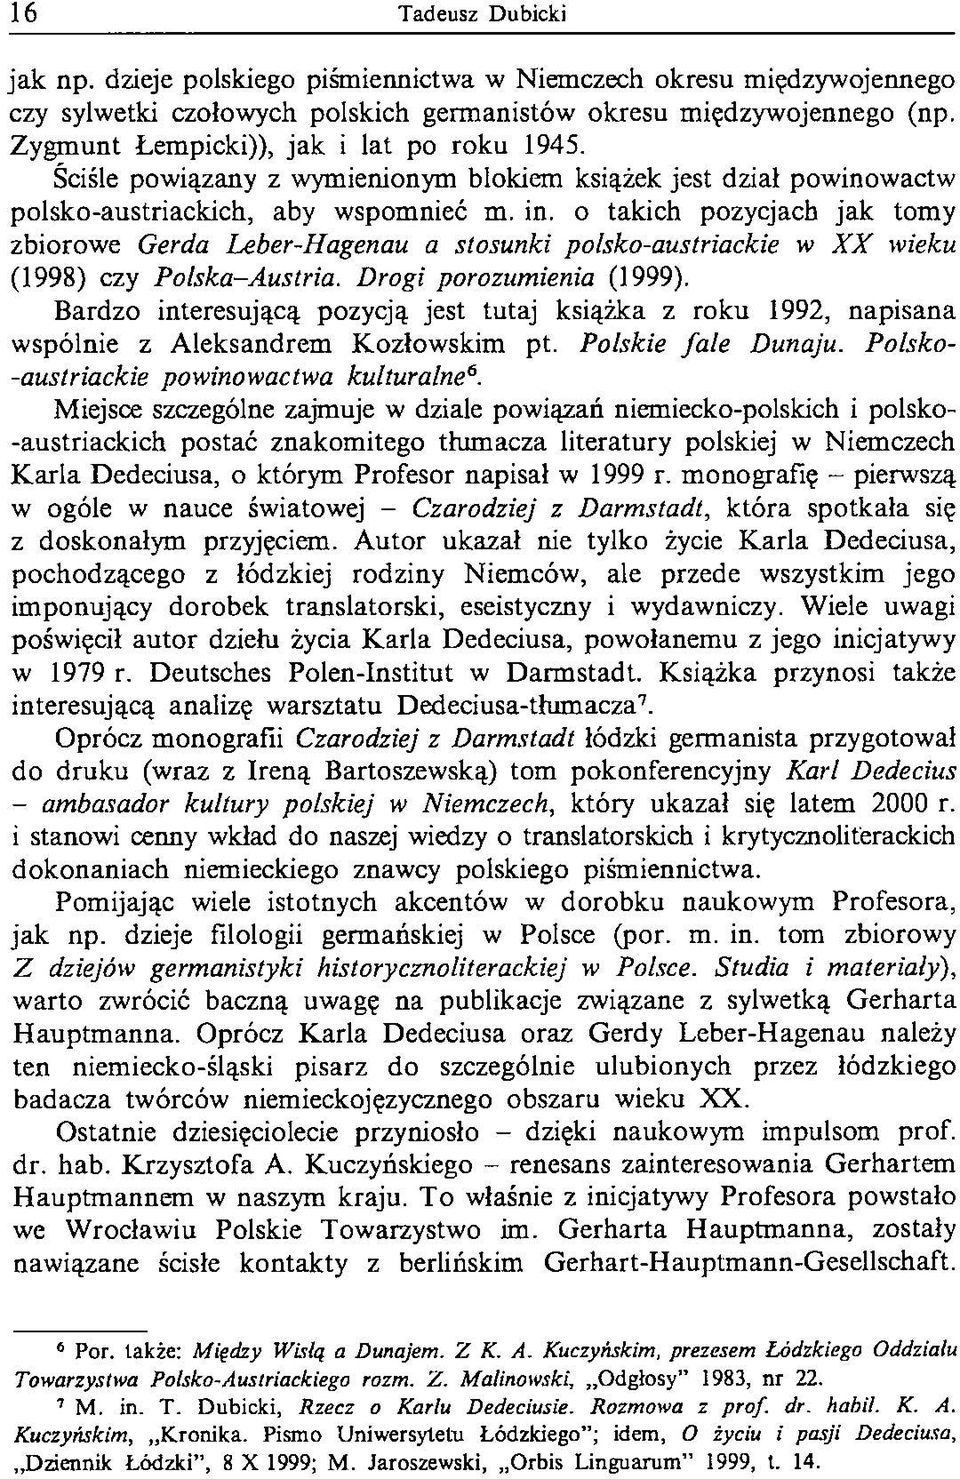 o takich pozycjach jak tomy zbiorowe Gerda Leber-Hagenau a stosunki polsko-austriackie w X X wieku (1998) czy Polska-Austria. Drogi porozumienia (1999).